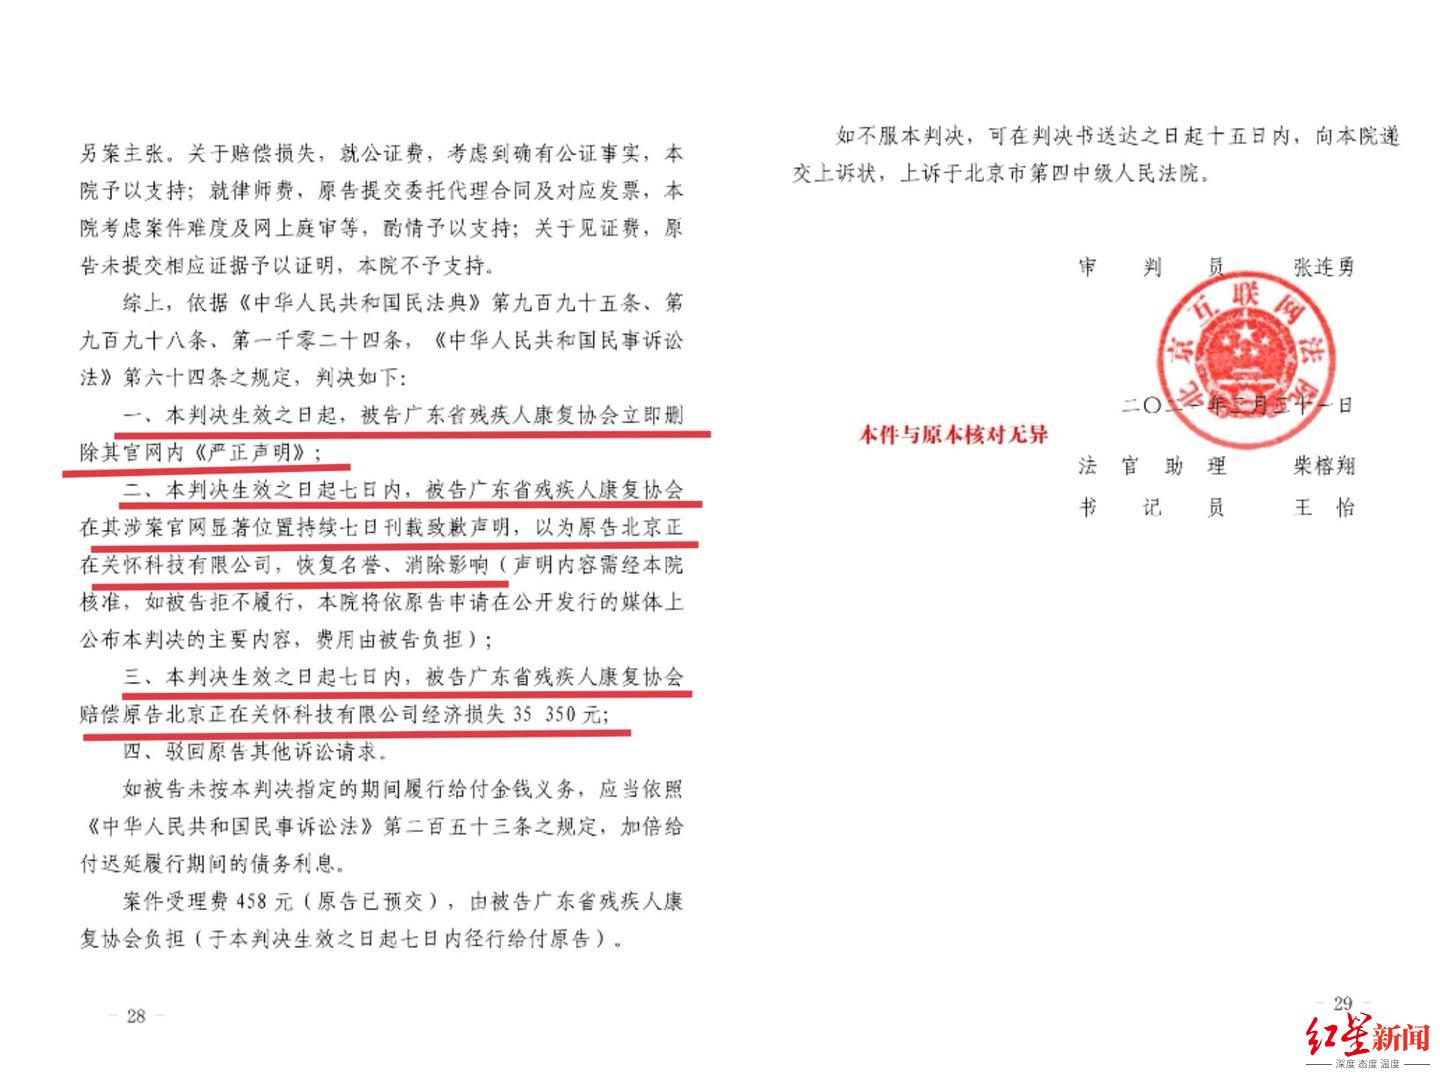 北京互联网法院判决广东省残疾人康复协会道歉、赔偿